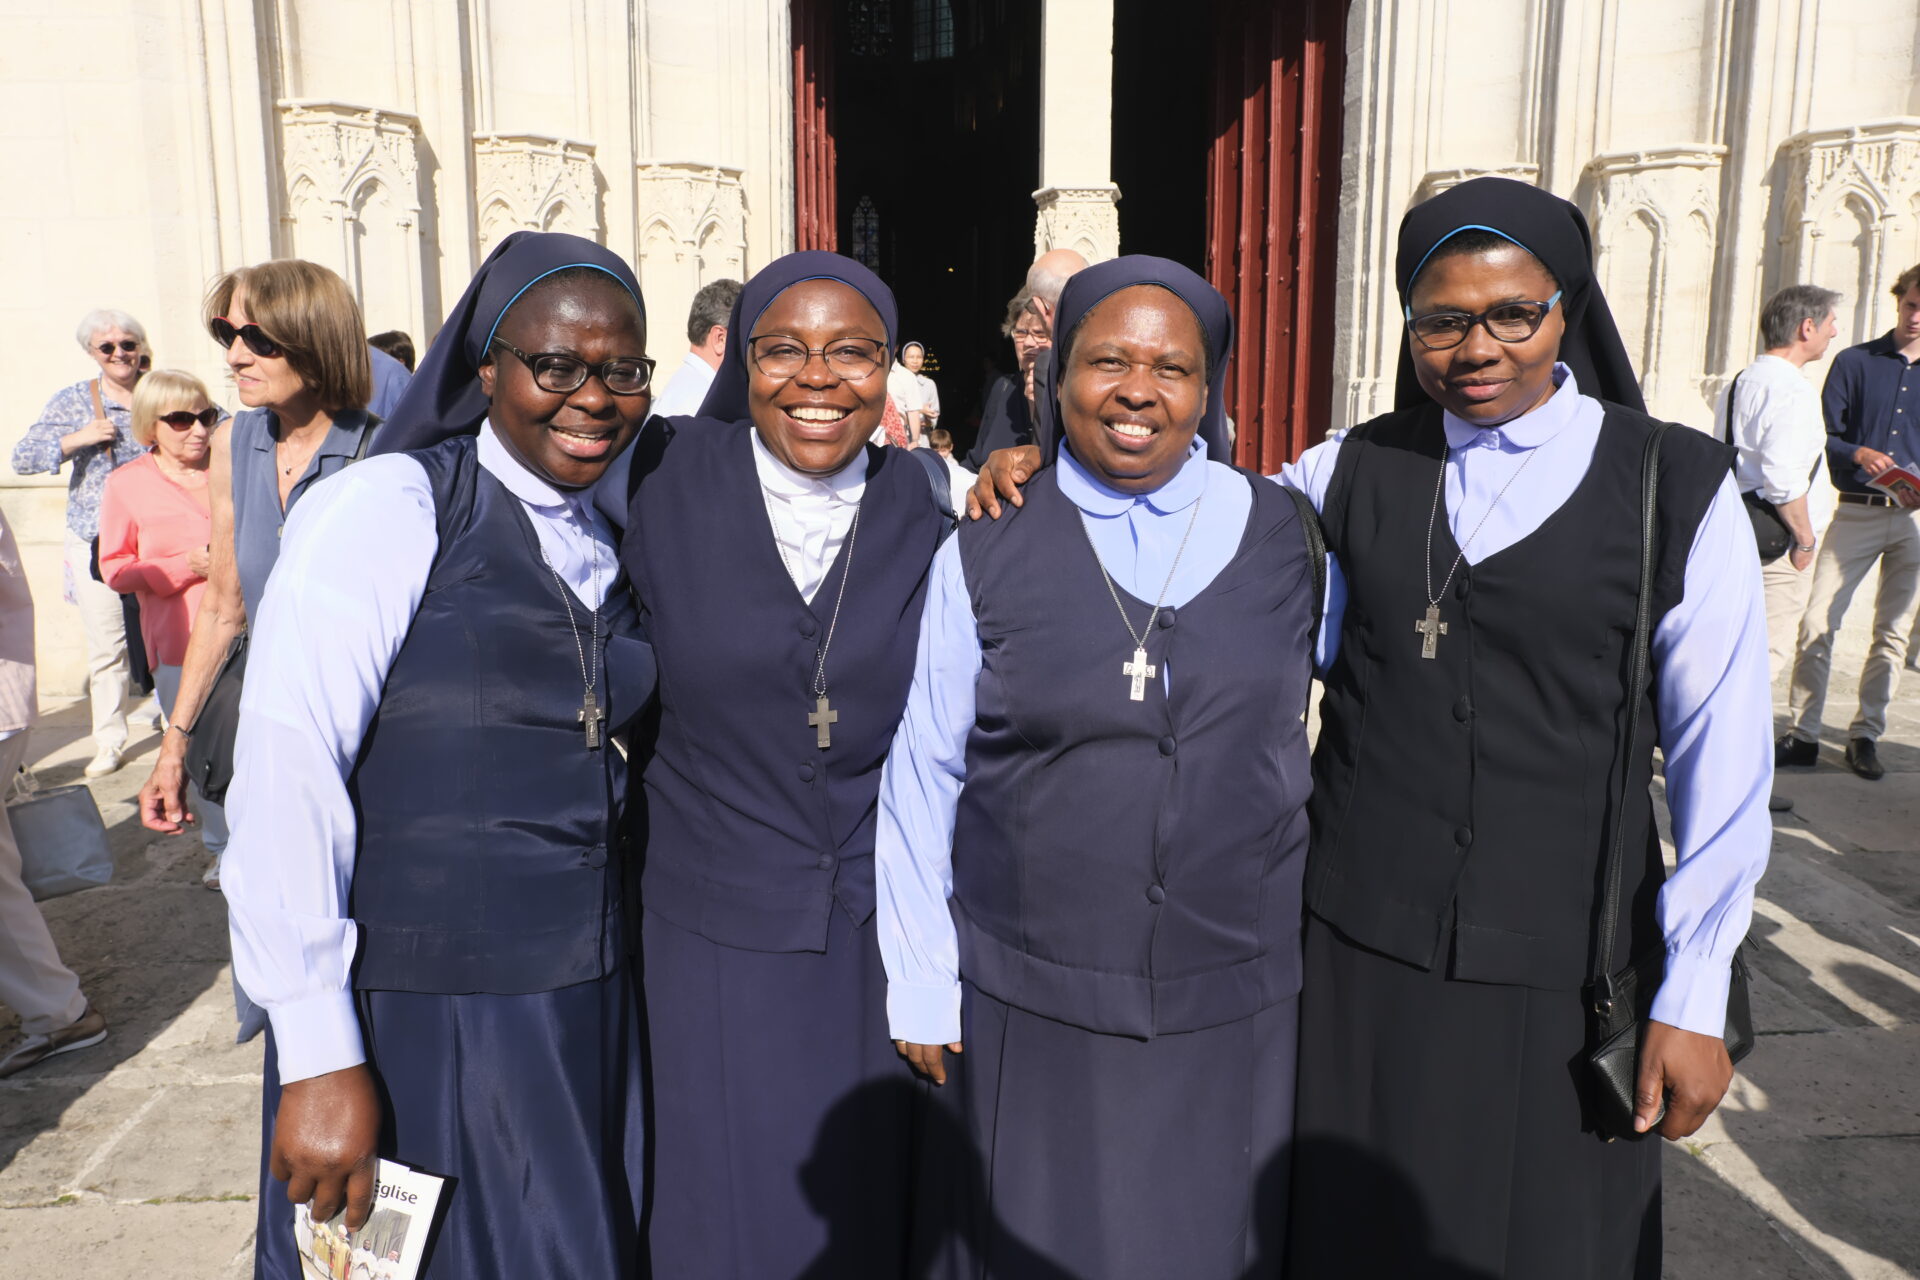 Sœurs diocèse de Meaux ordinations juin 2023